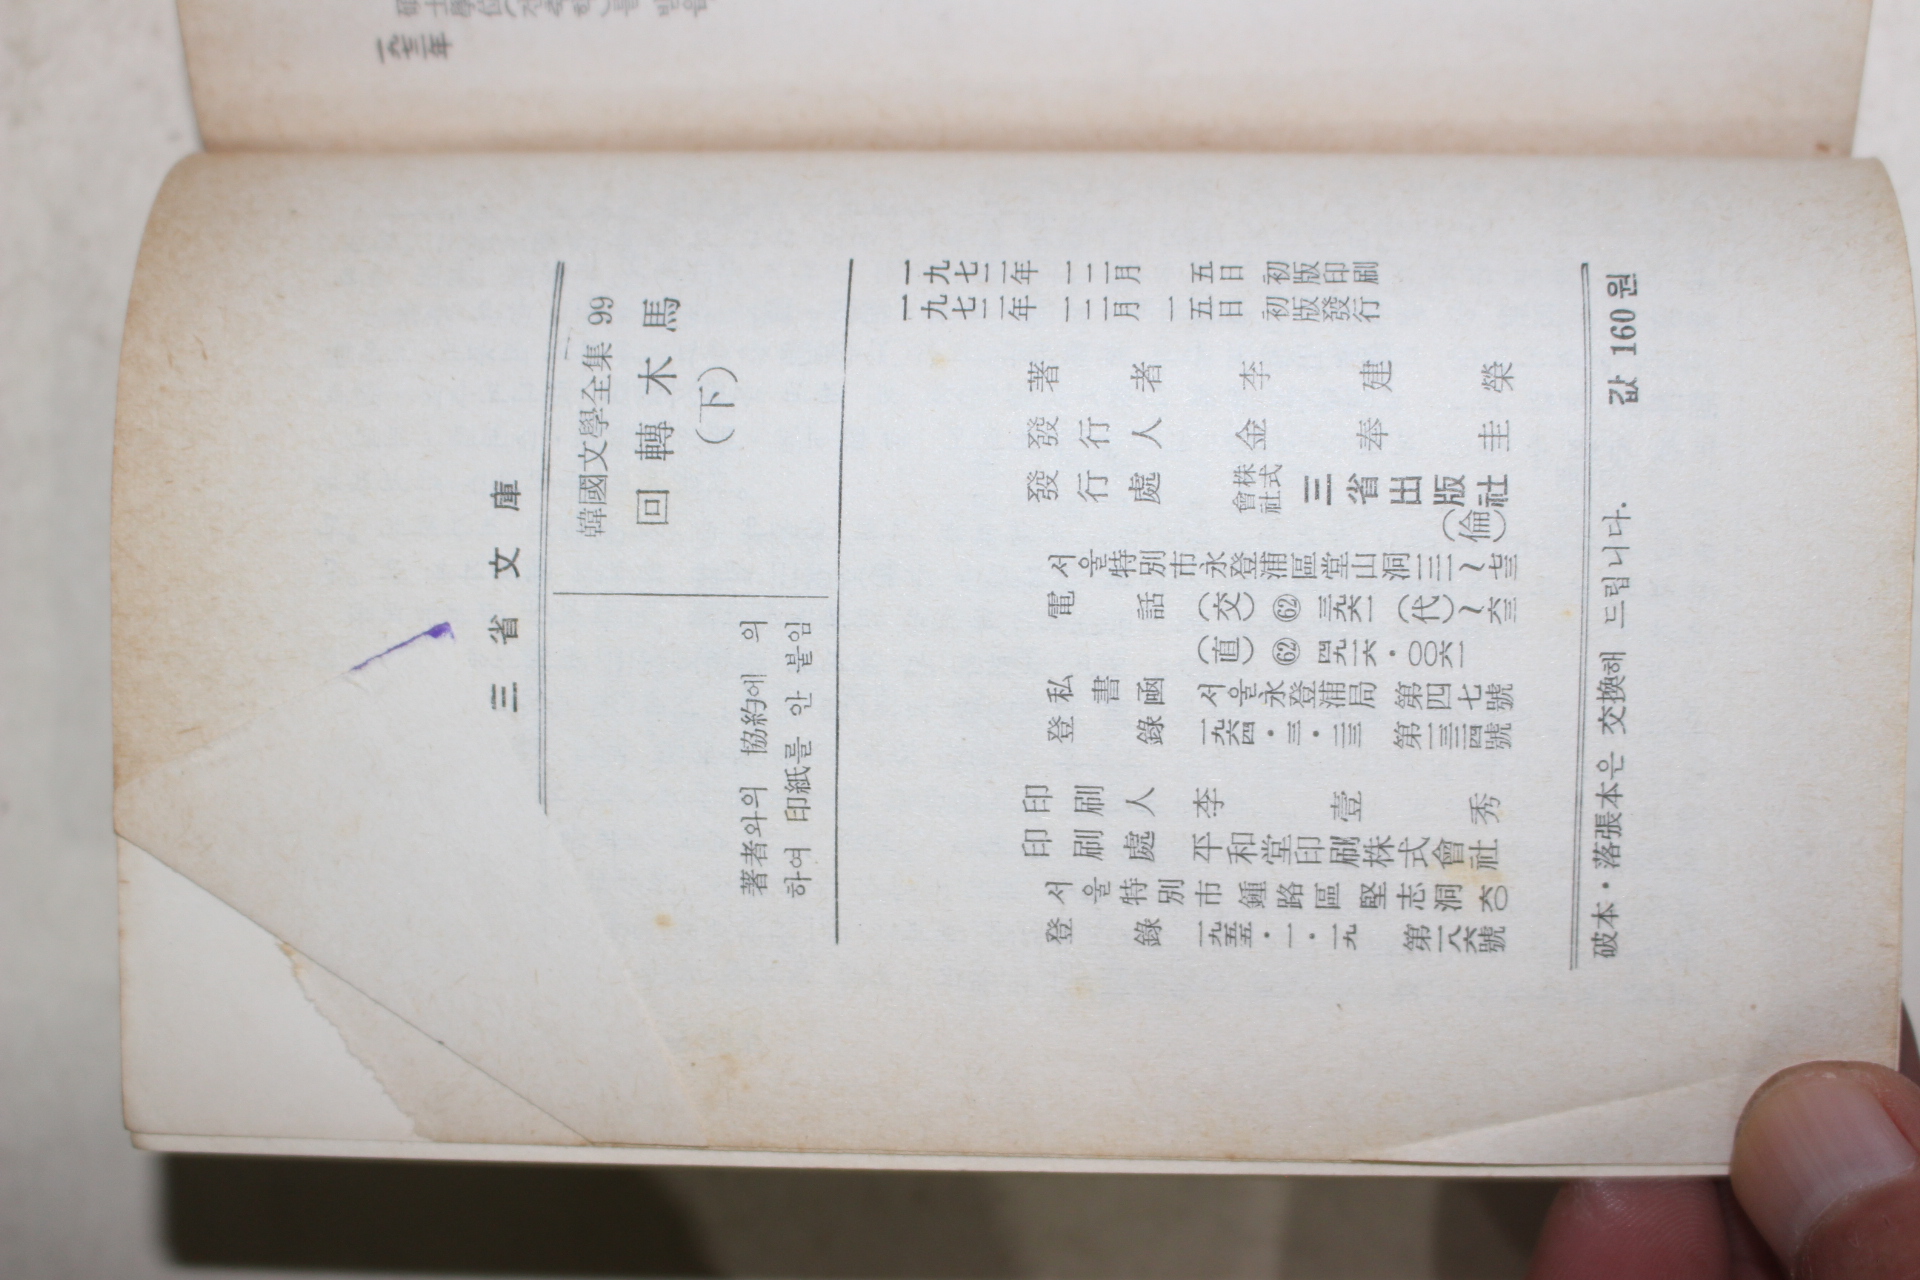 1972년초판 이건영(李建榮) 회전목마(回轉木馬) 2책완